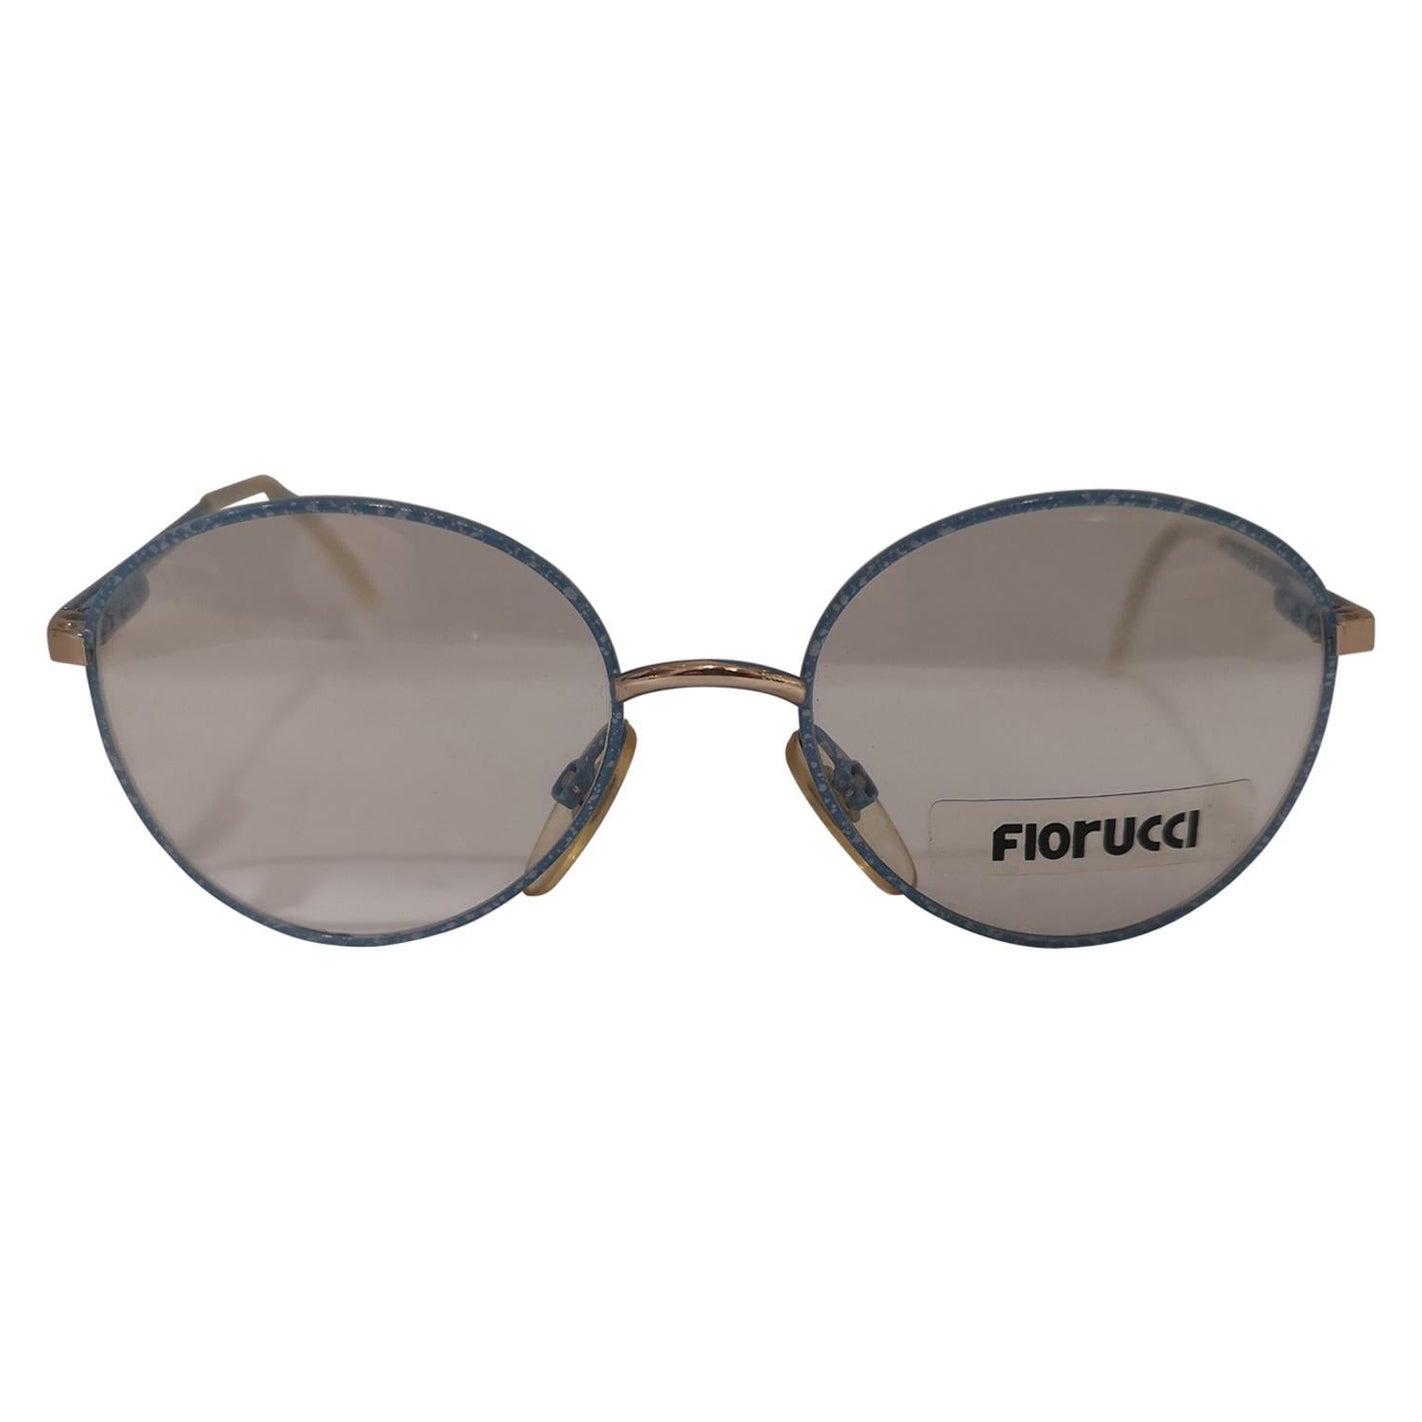 Fiorucci light blue frames glasses NWOT For Sale